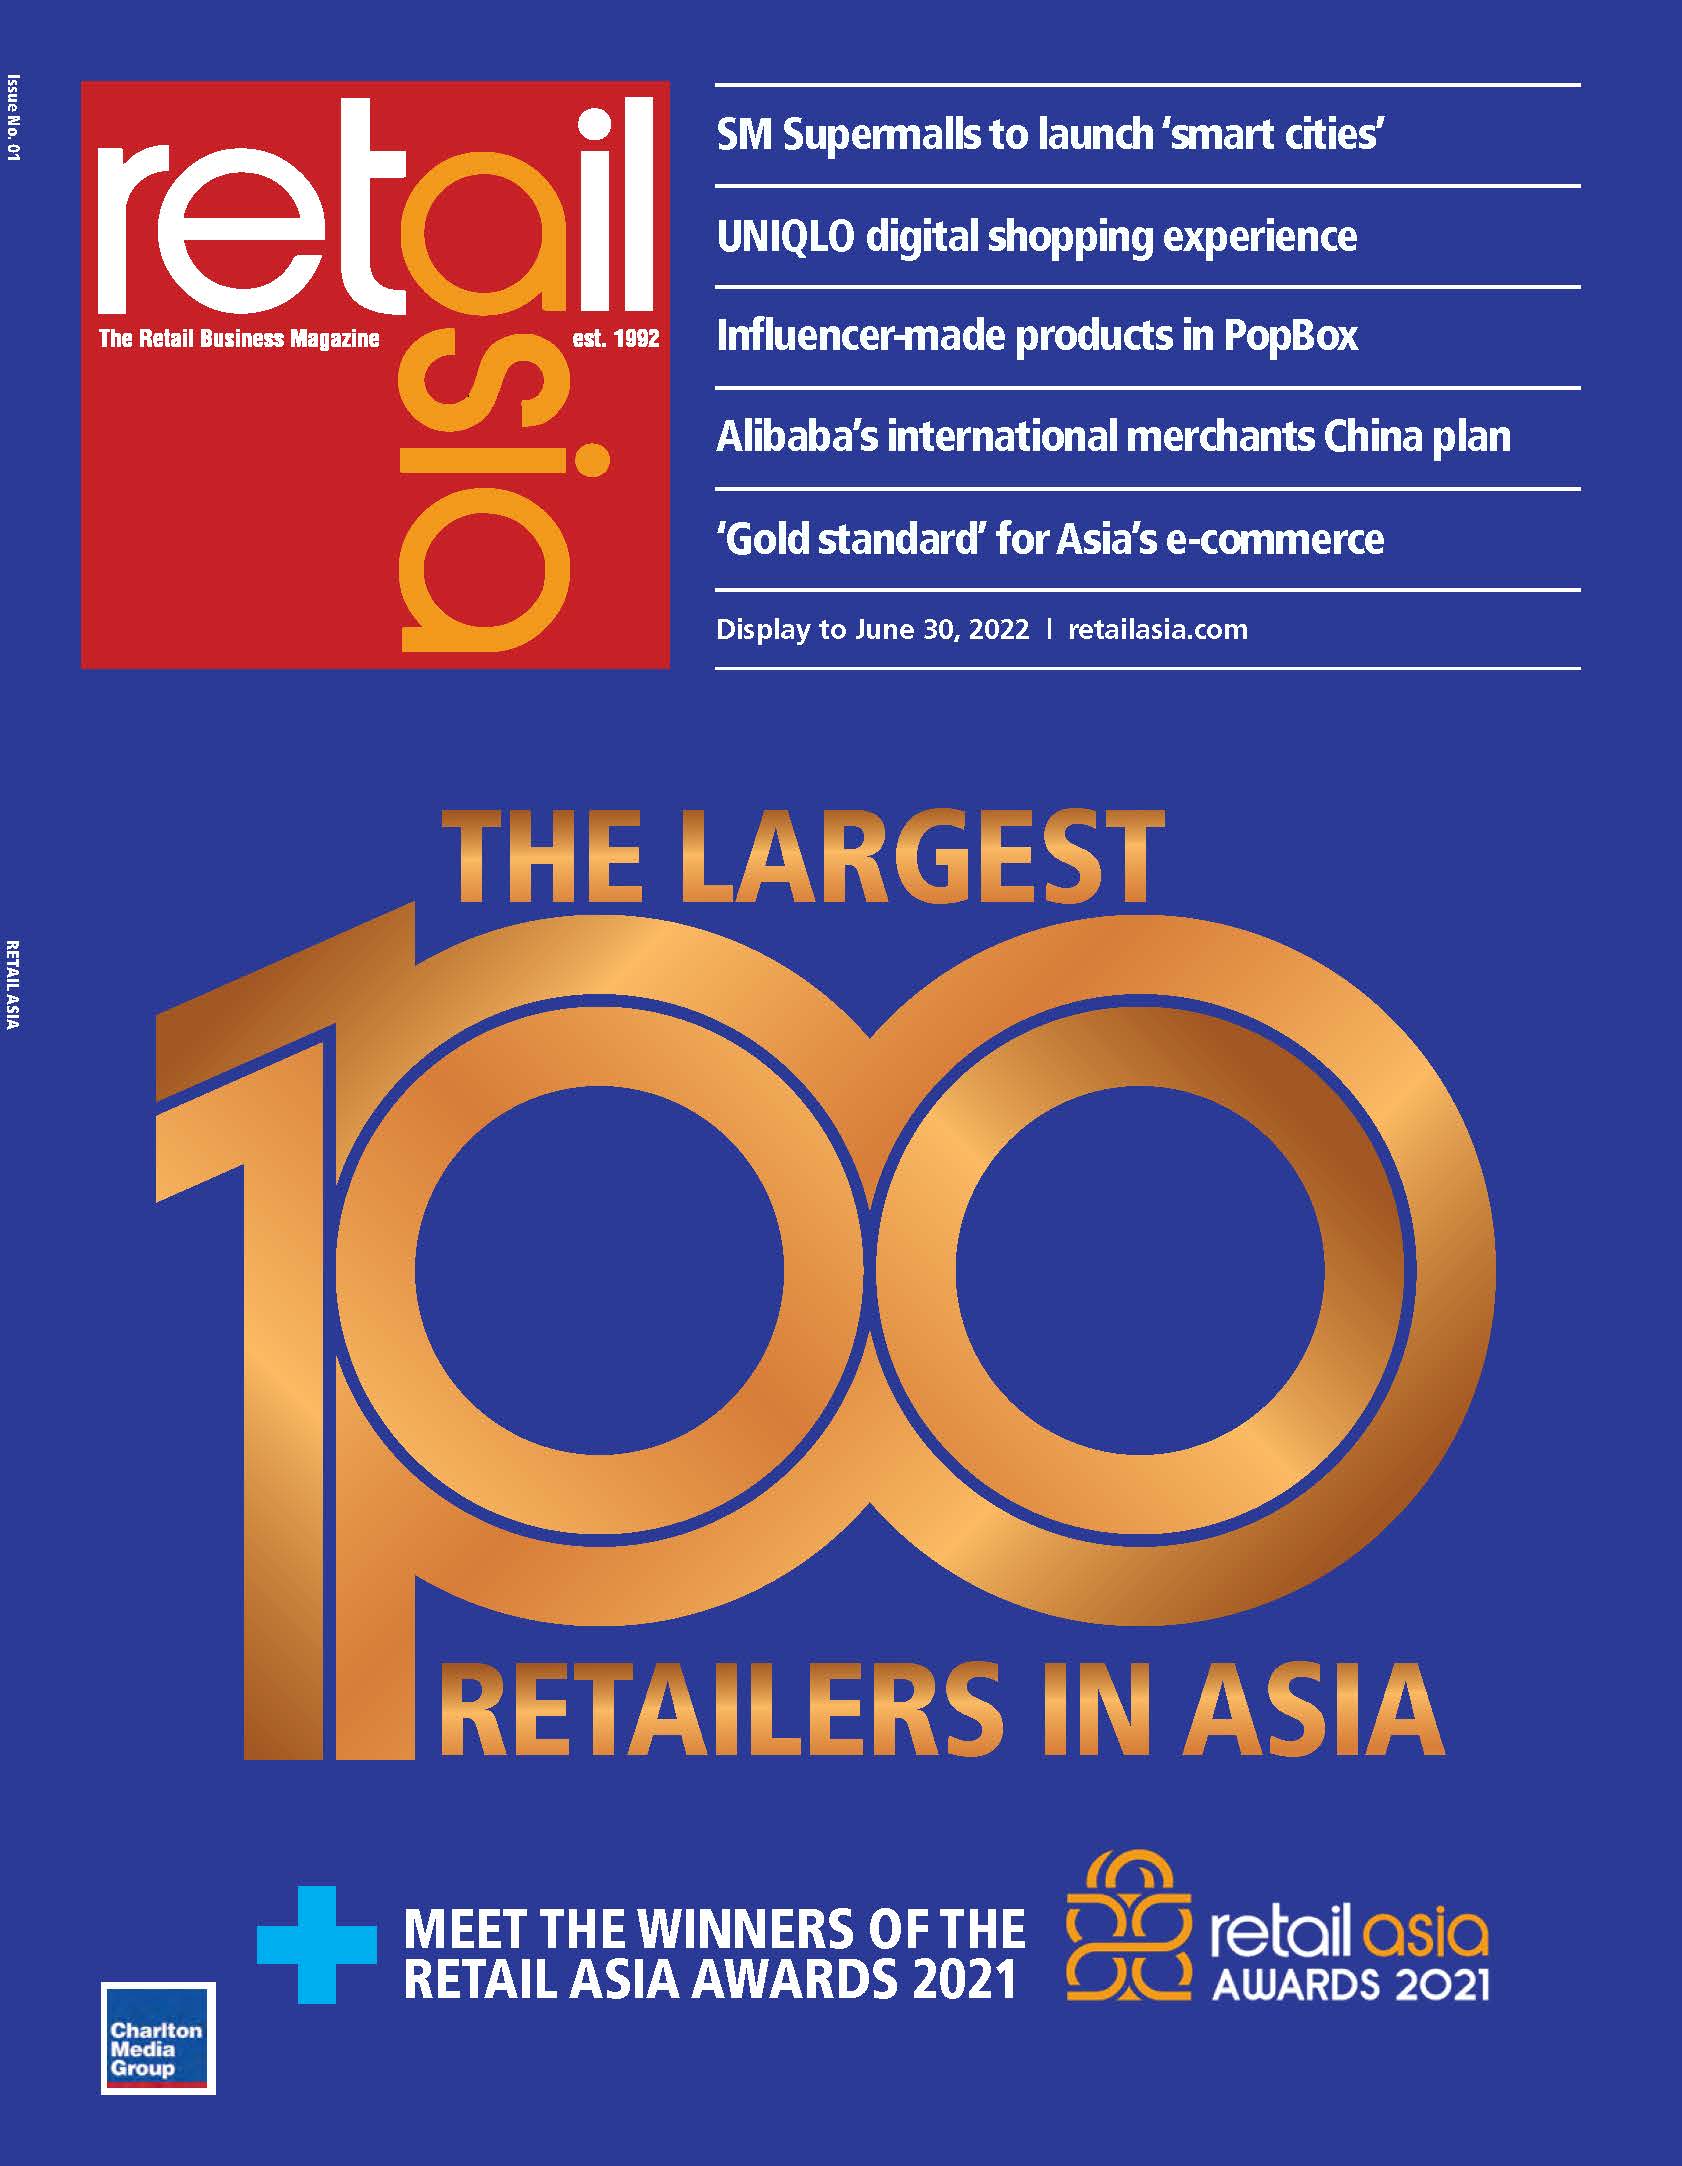 Retail Asia